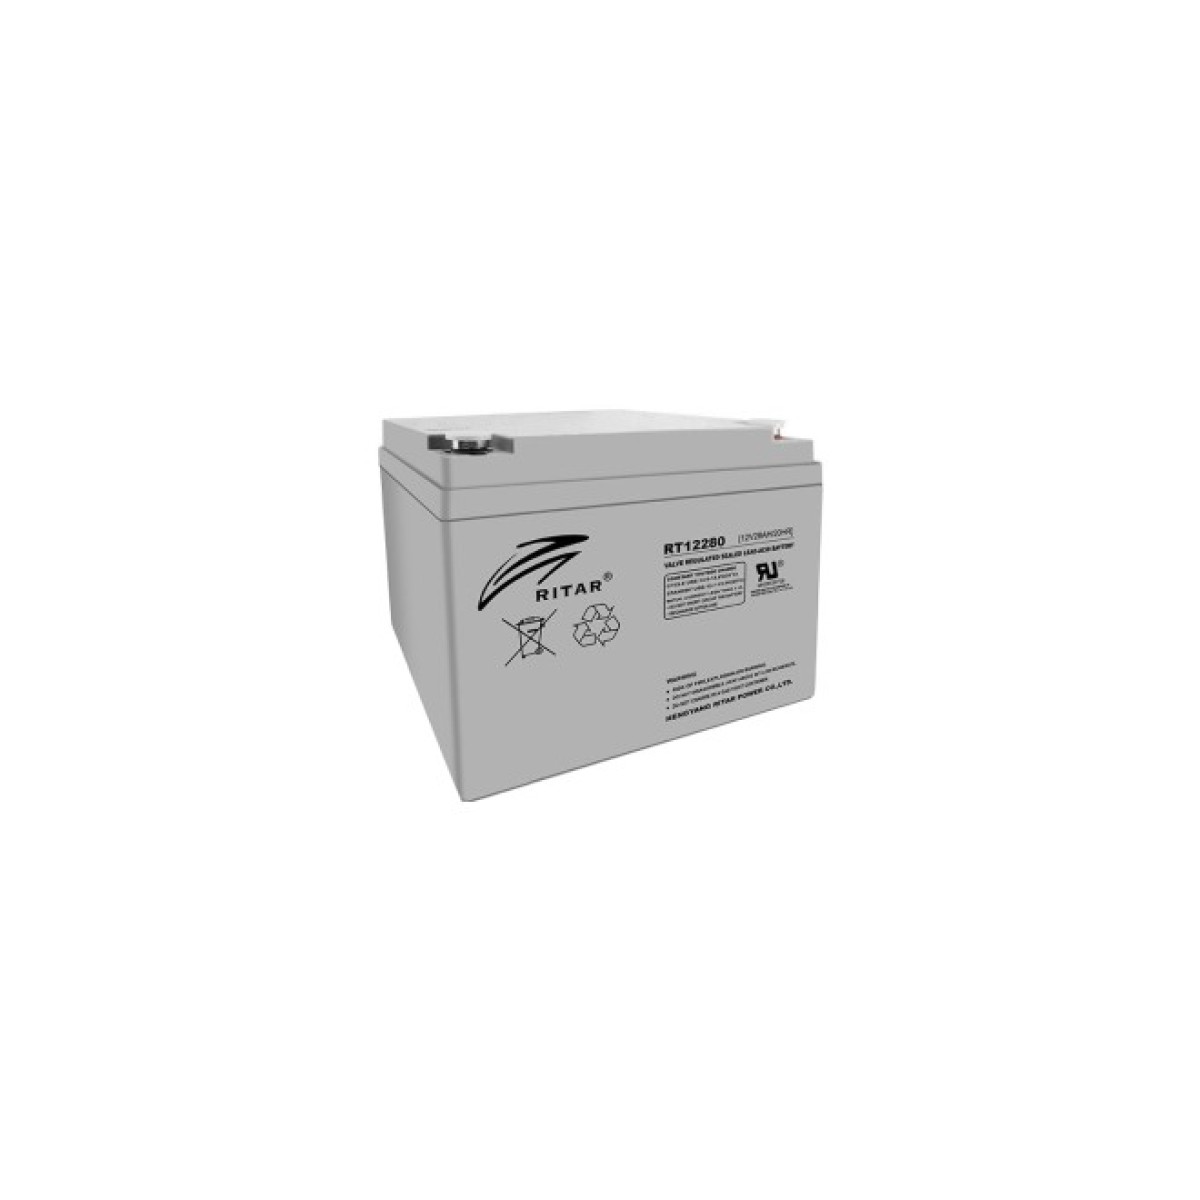 Батарея к ИБП Ritar AGM RT12280, 12V-28Ah (RT12280) 256_256.jpg